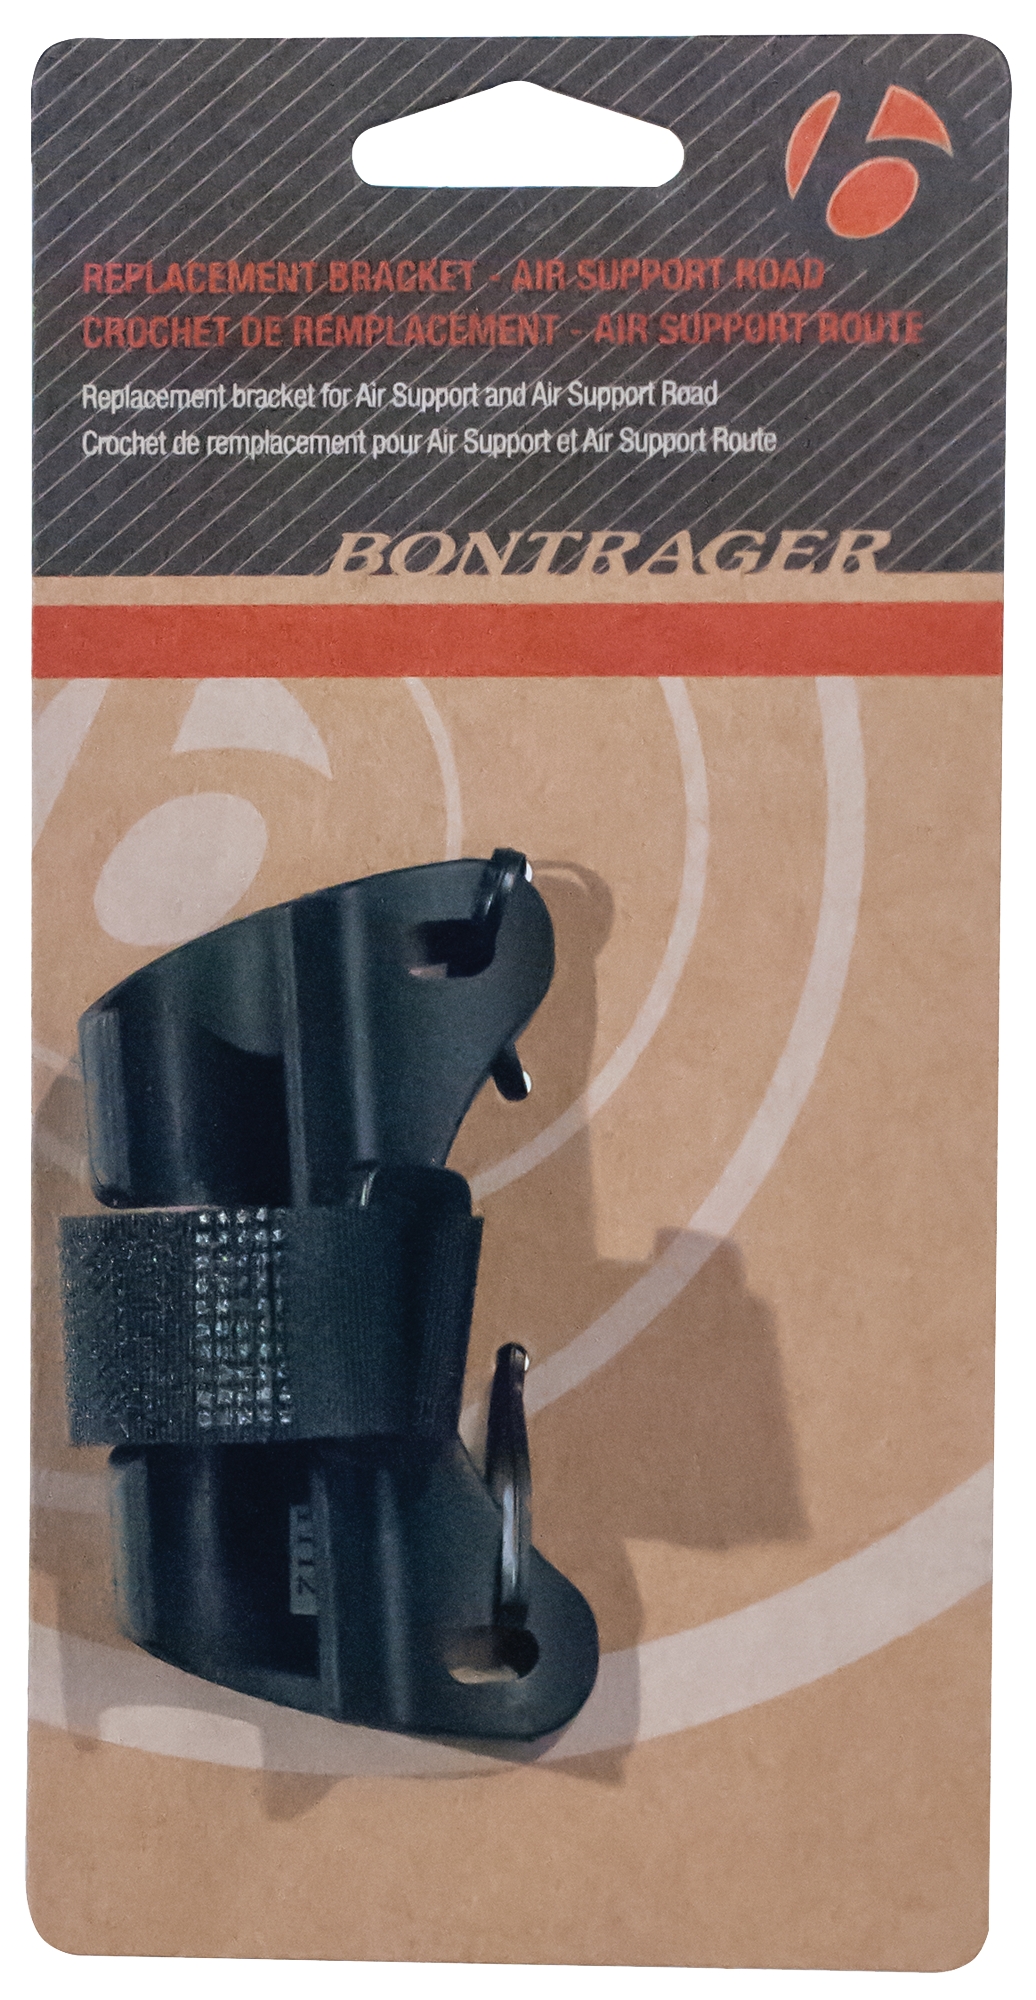 bontrager pump replacement parts